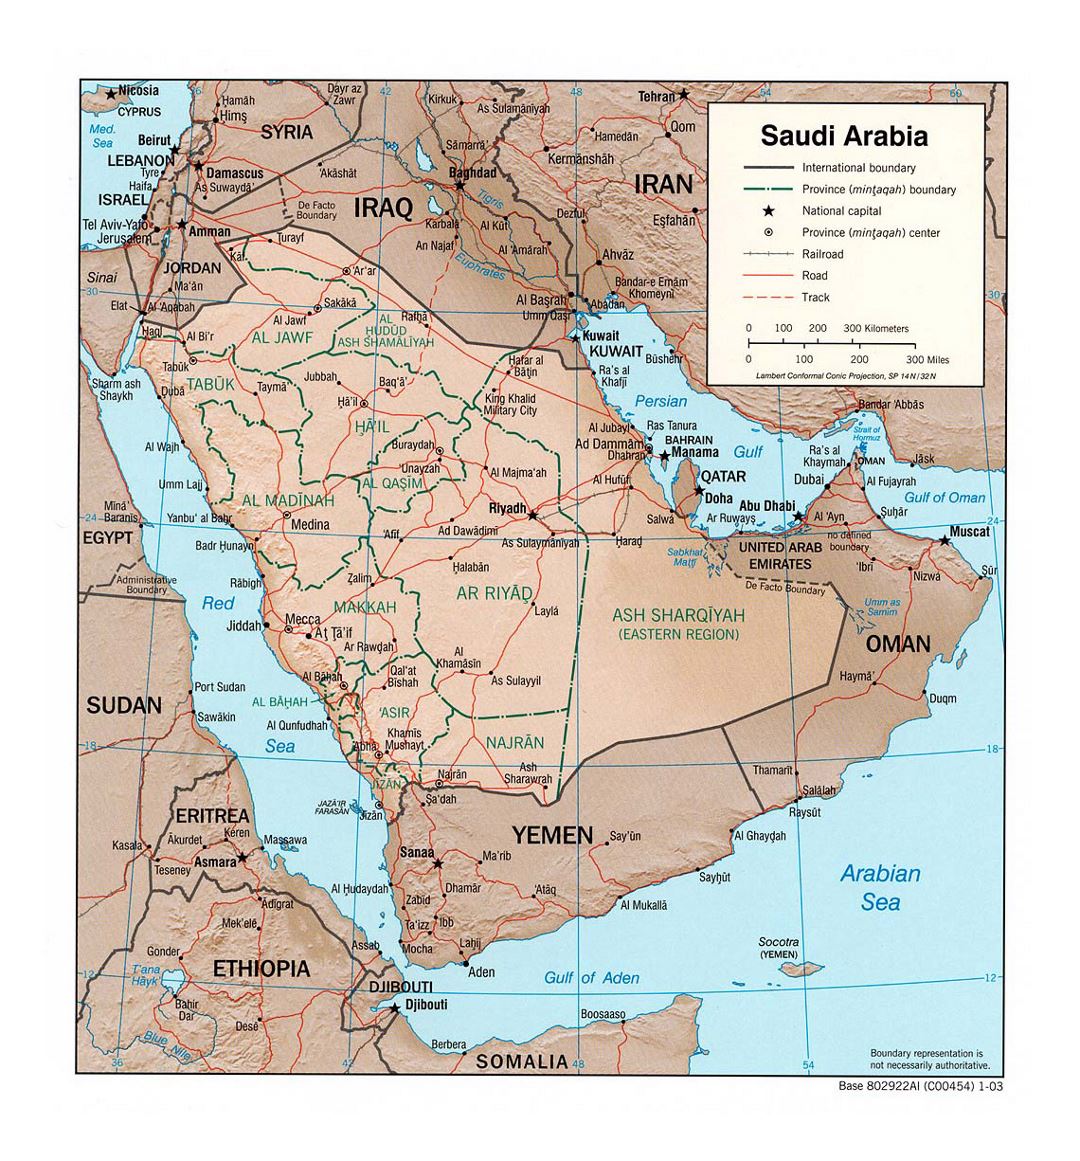 Детальная политическая и административная карта Саудовской Аравии с рельефом, дорогами, железными дорогами и крупными городами - 2003